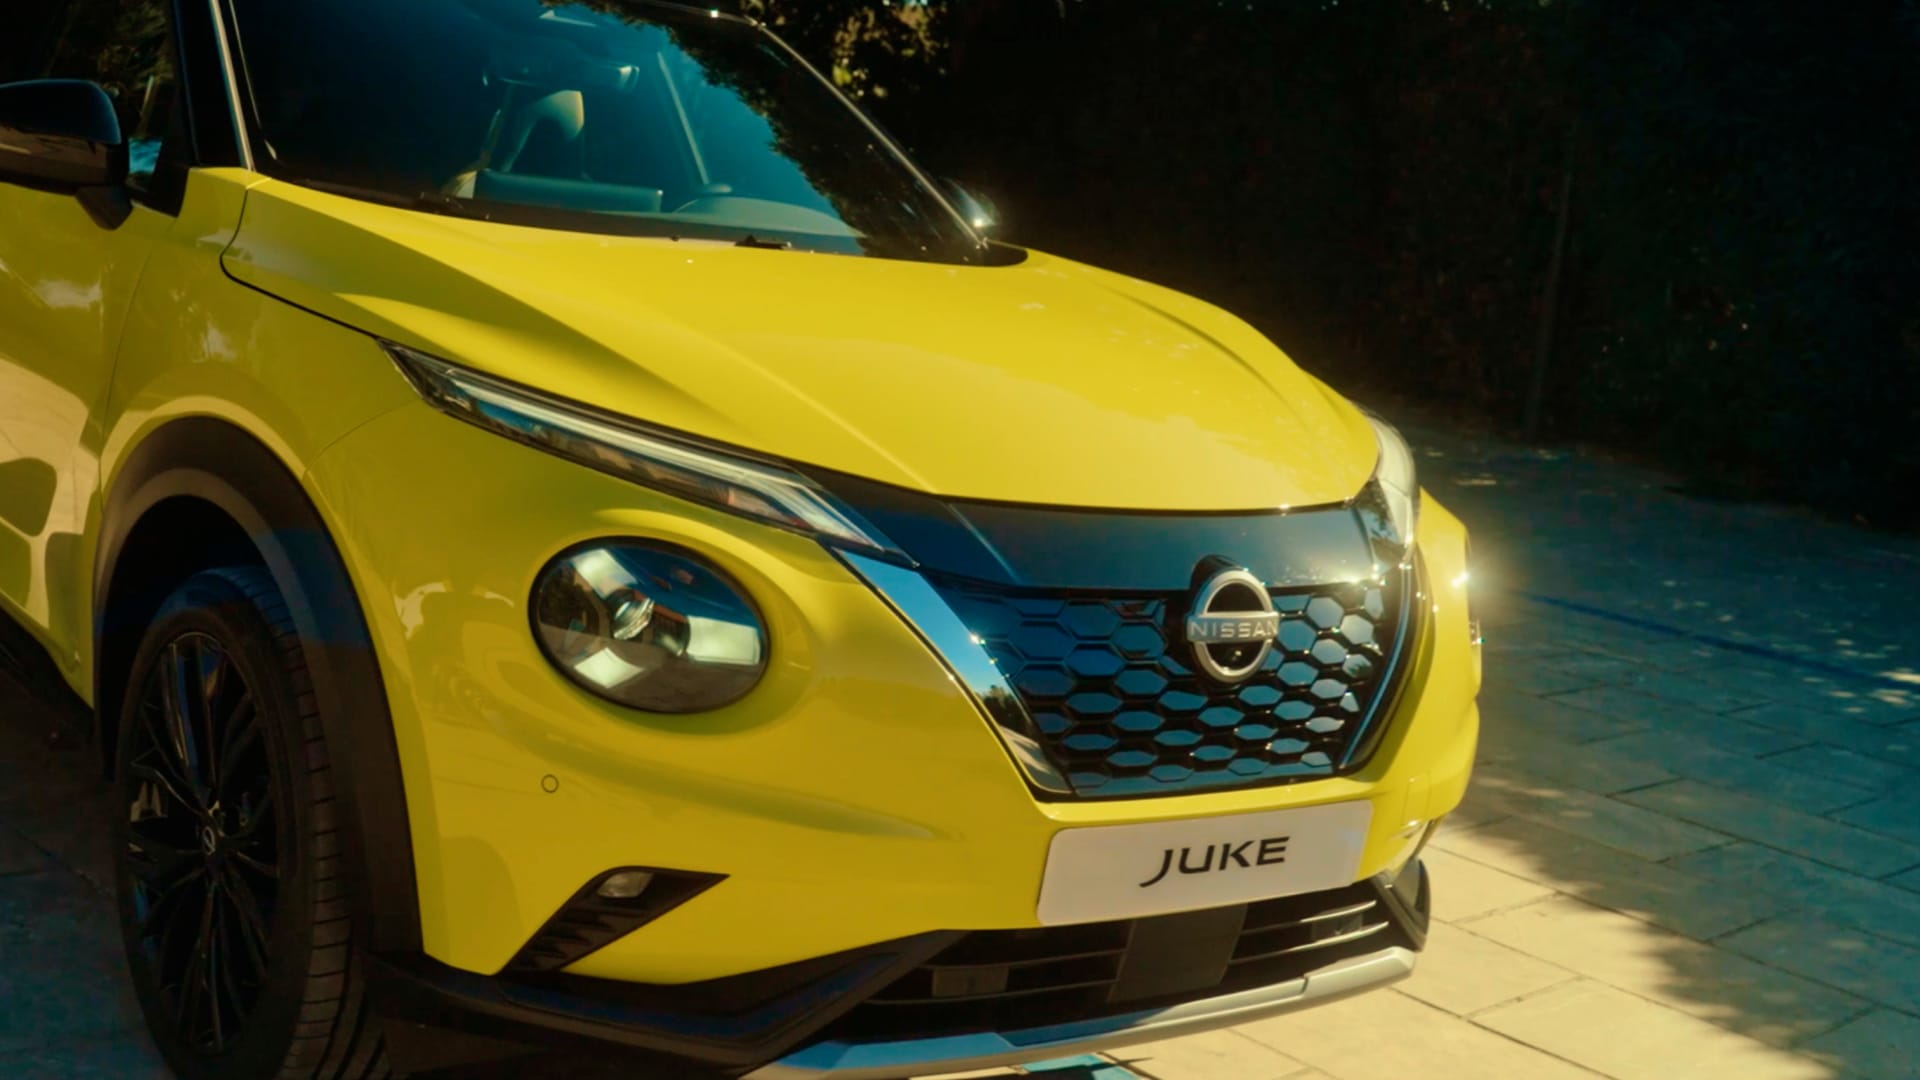 Vídeo del Nuevo Nissan Juke detalles diseño exterior